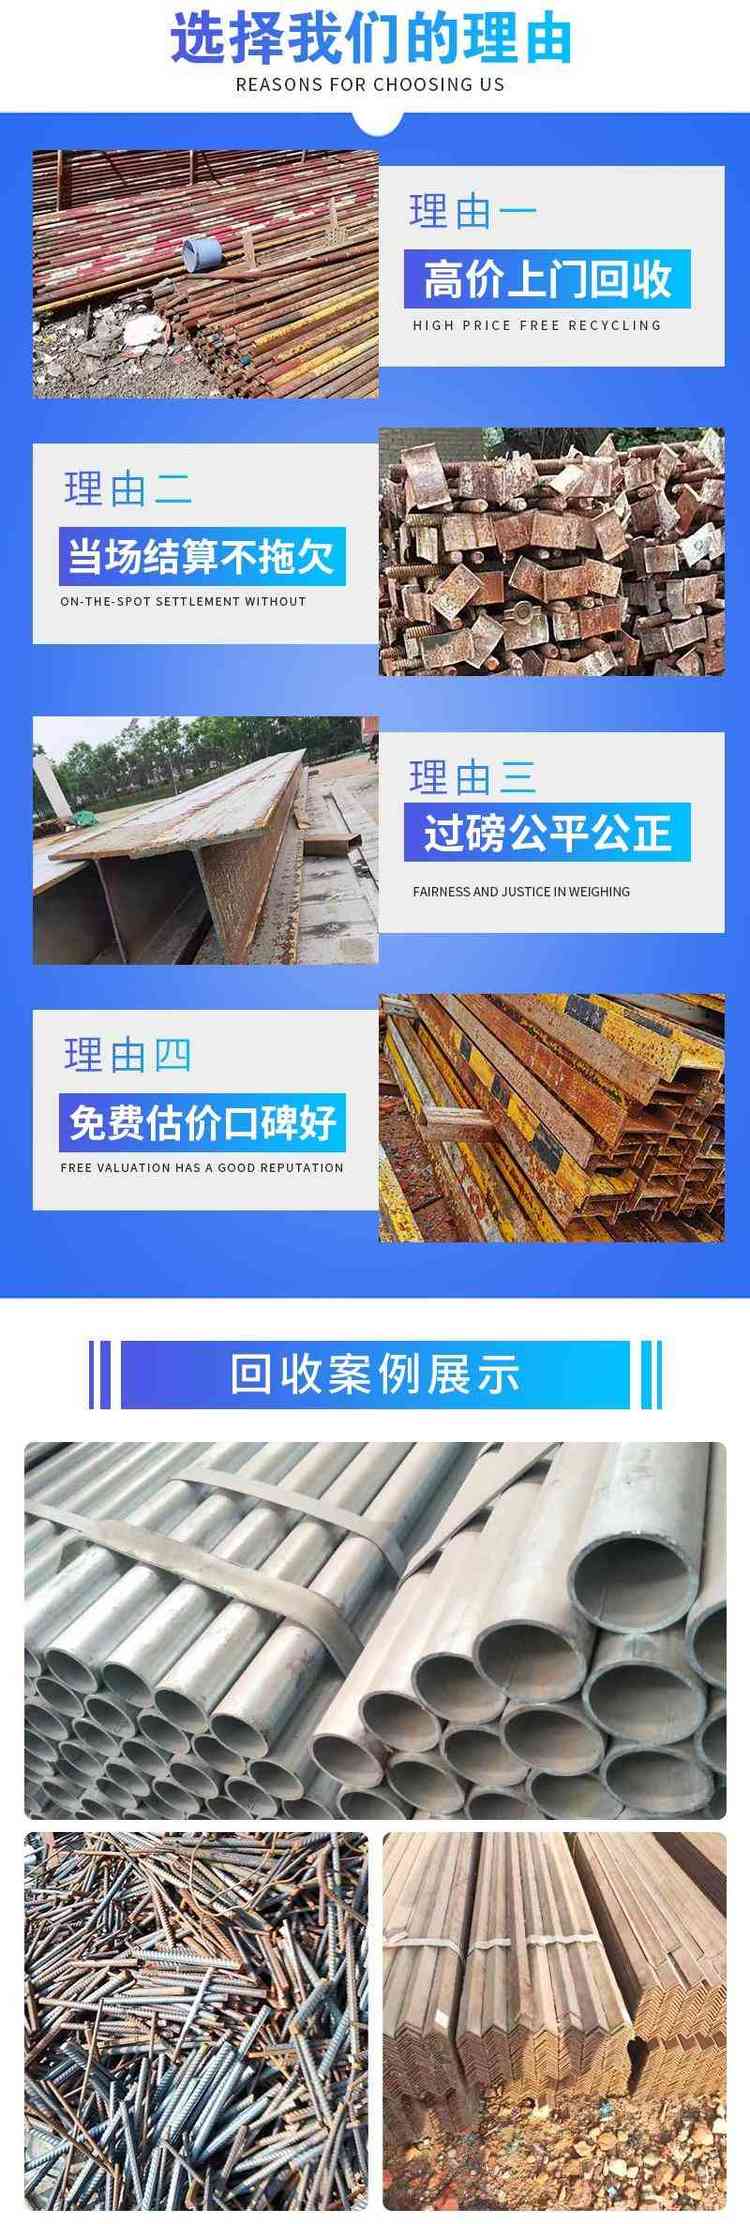 广州从化电缆拆除回收配电房收购厂家提供服务